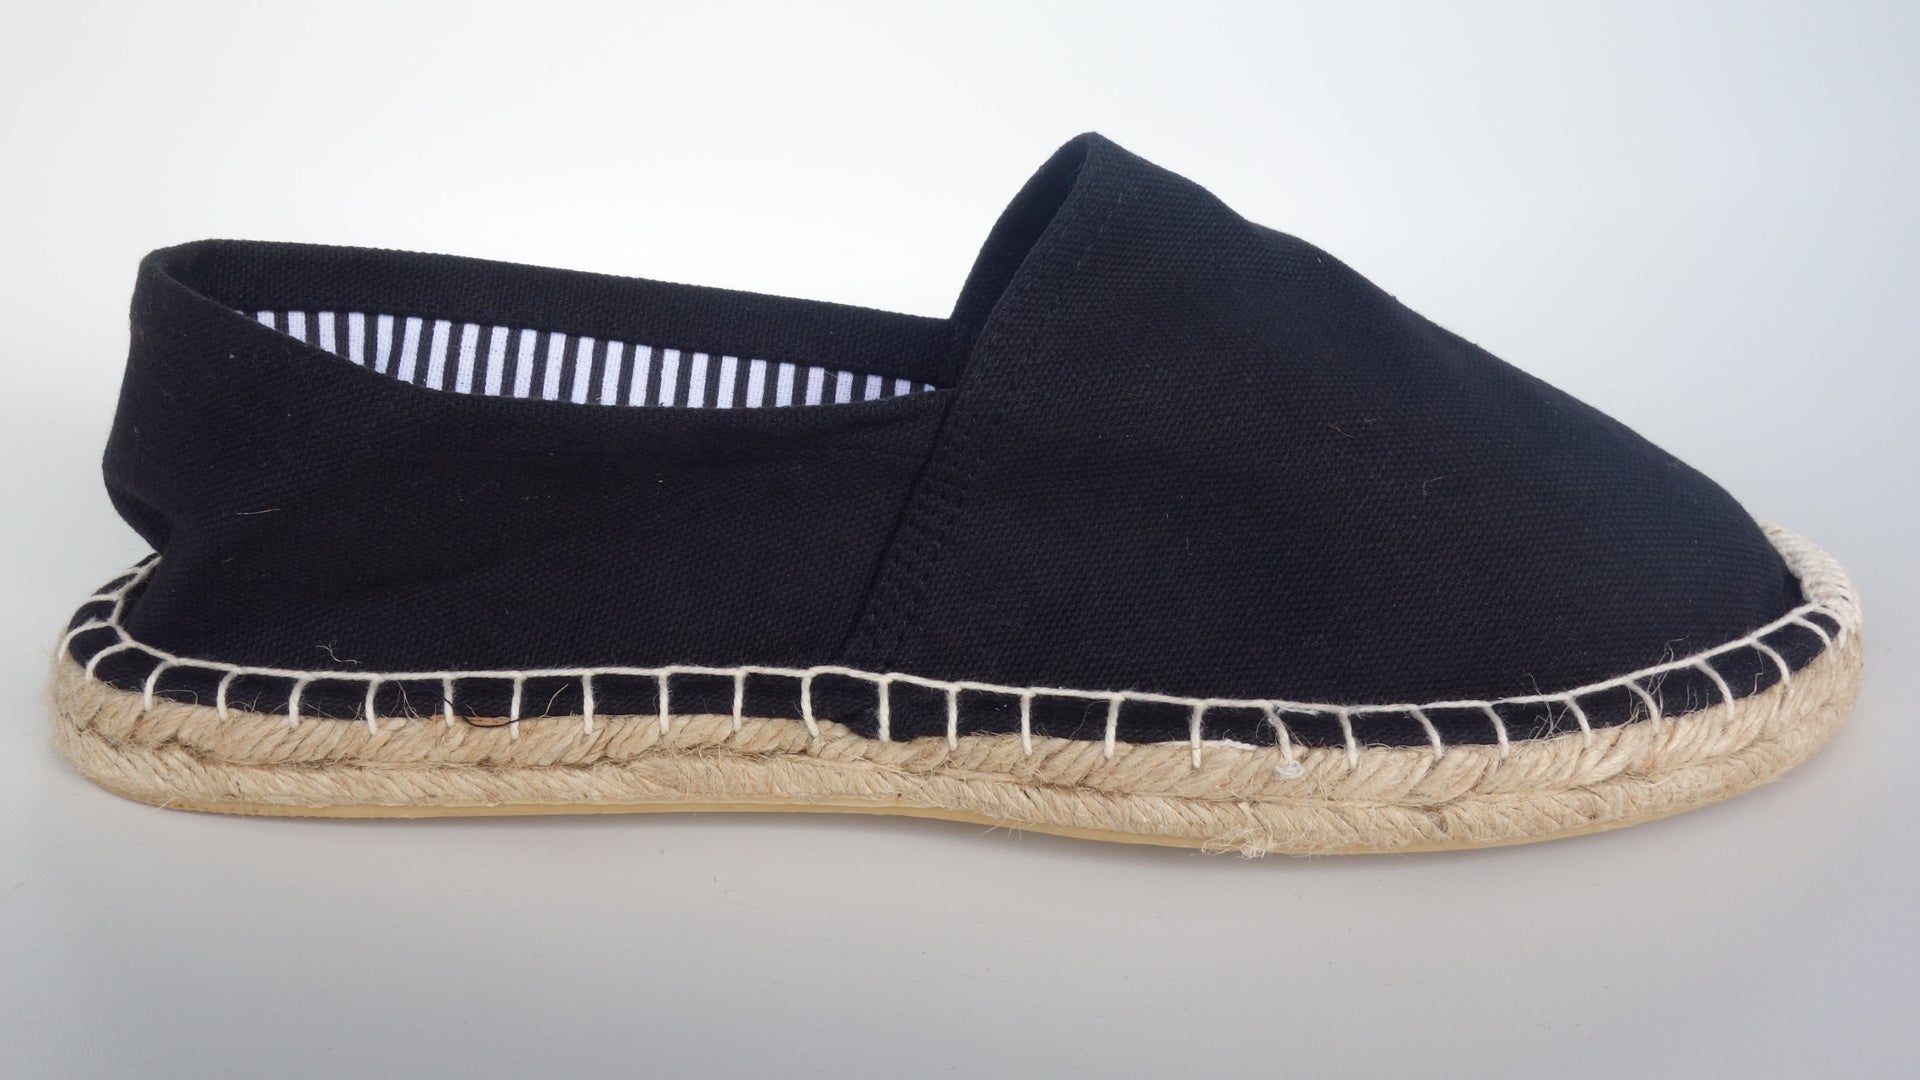 ¡hola! espadrilles - Men's Cotton Canvas Jute Flats Slip-On Shoes | eBay